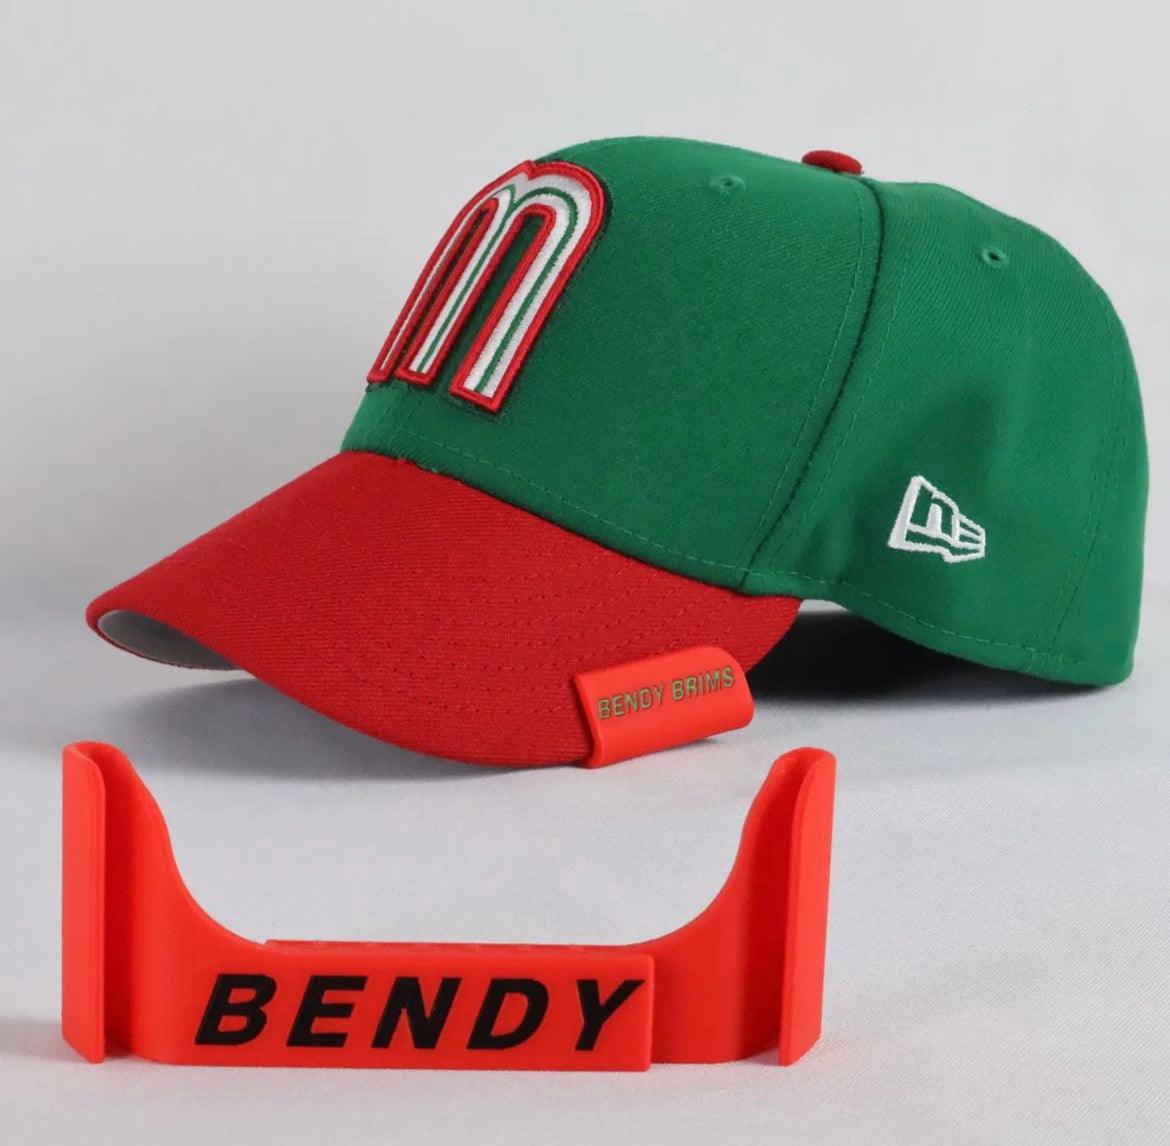 Astros “Heineken” New Era Fitted Hat – BeisbolMXShop